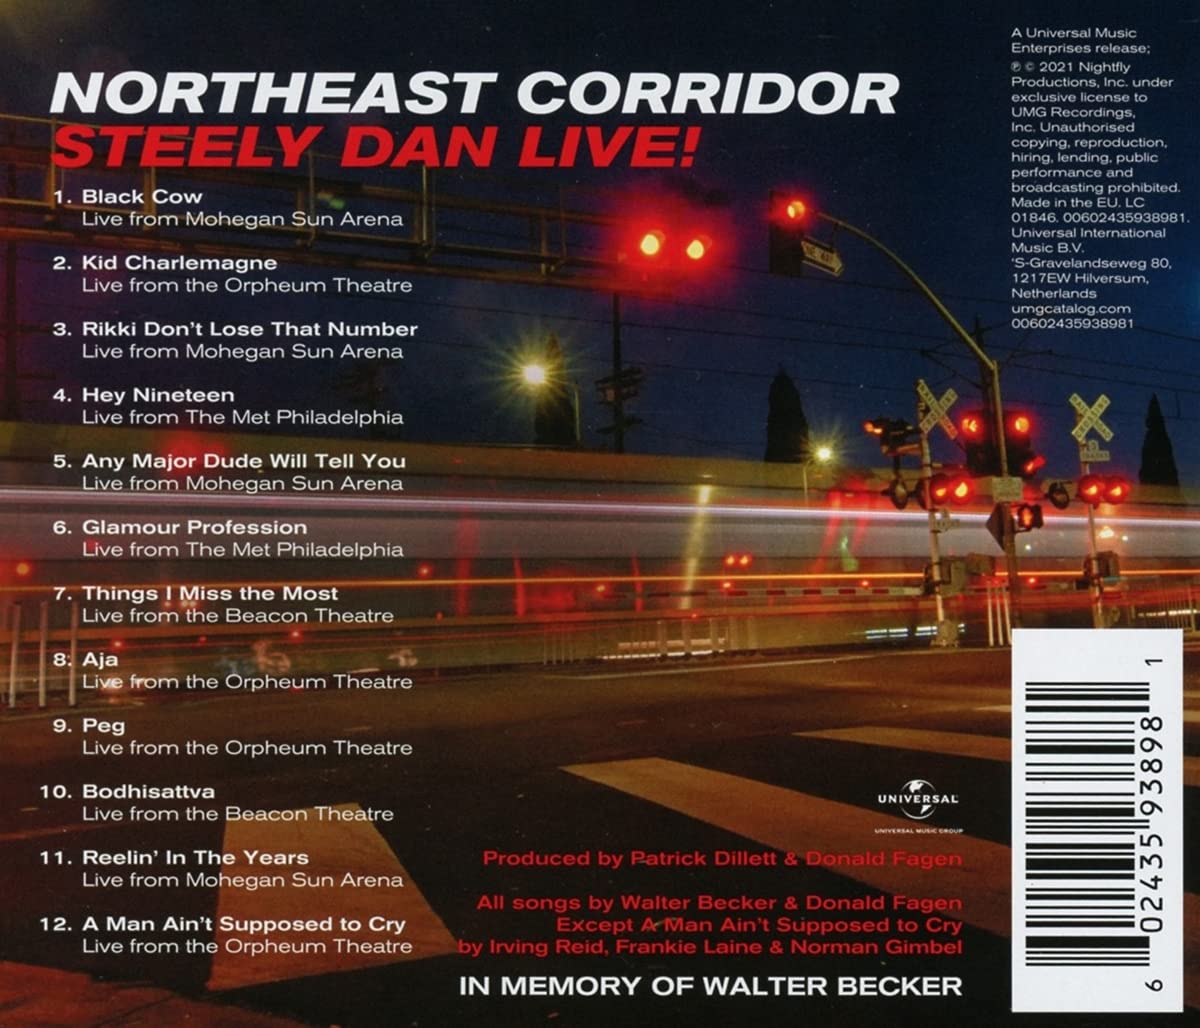 Steely Dan (스틸리 단) - Northeast Corridor: Steely Dan Live! 